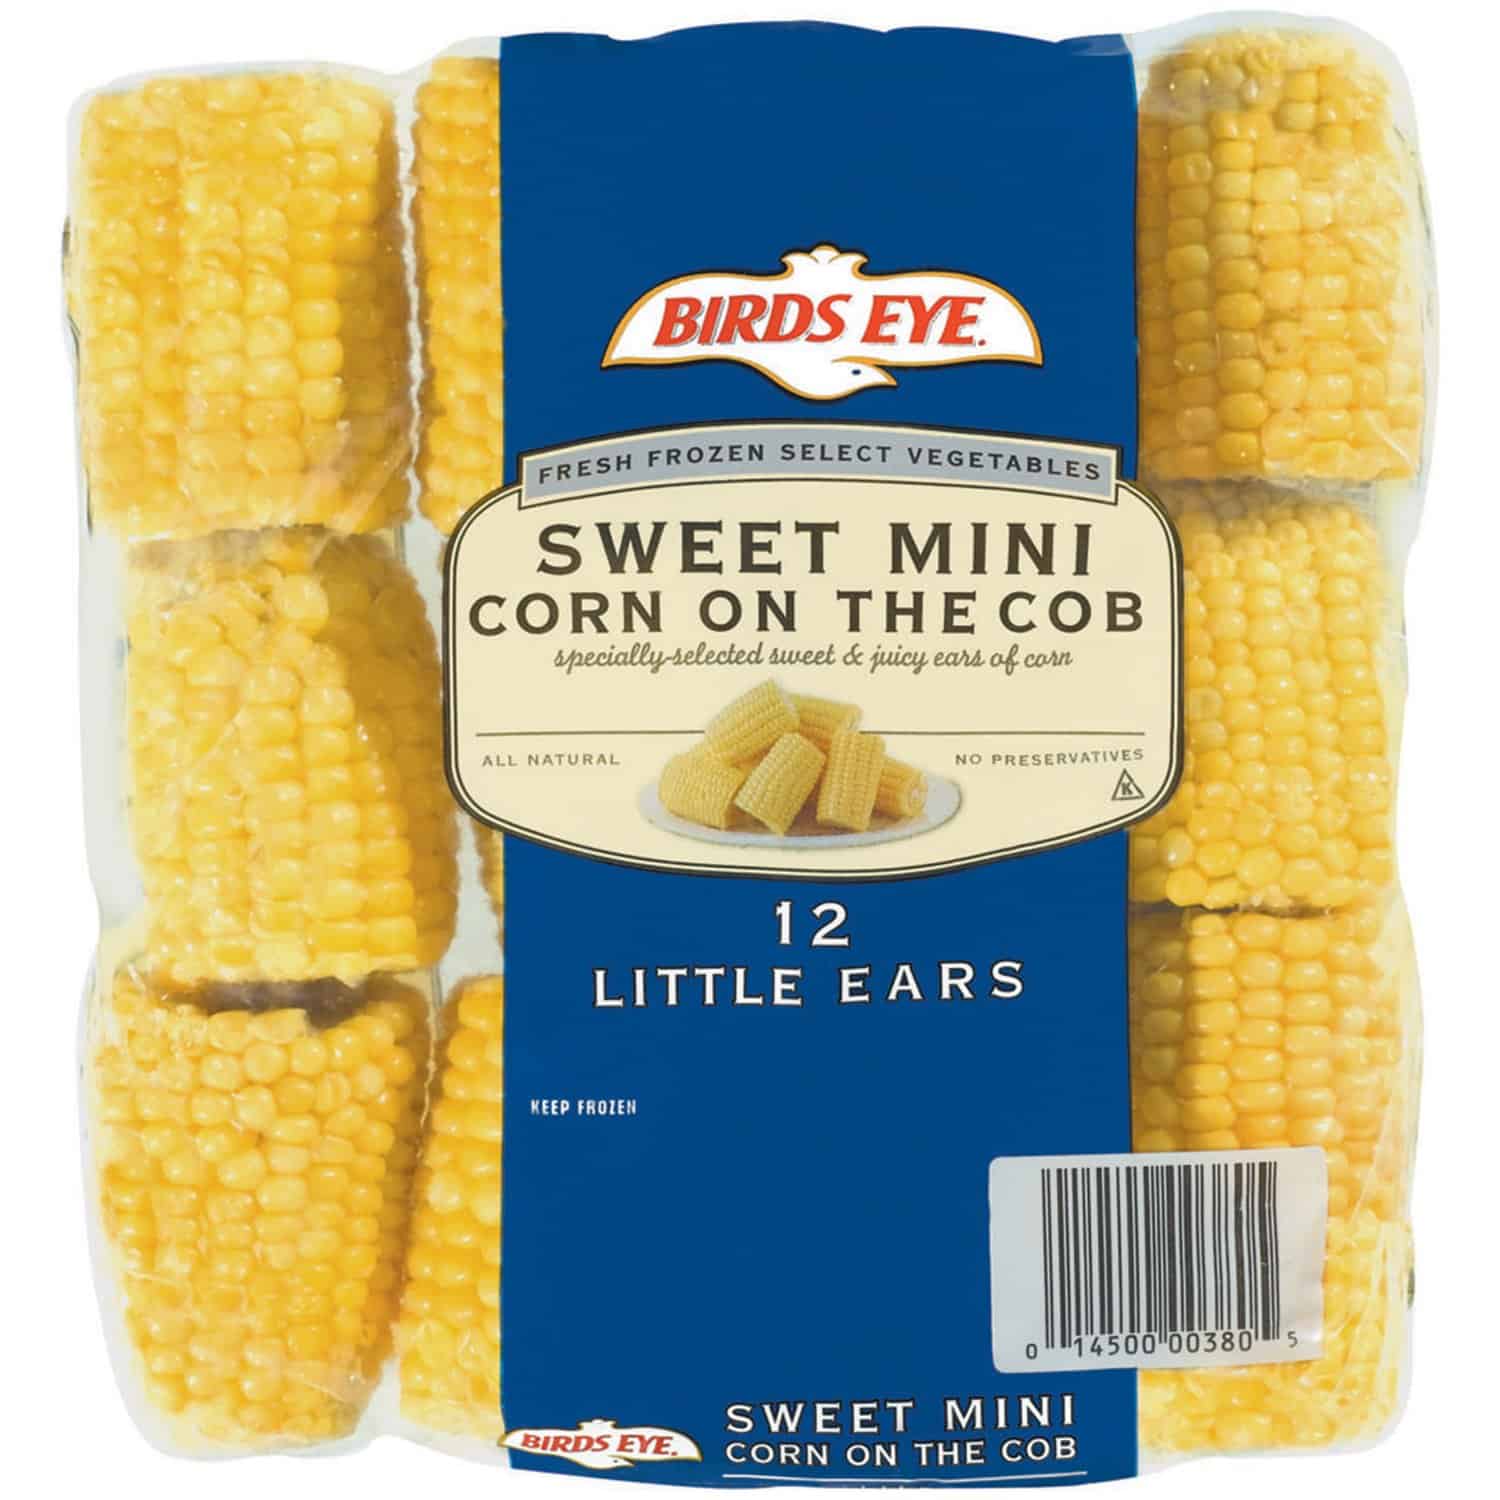 Bird's eye sweet mini corn on cob 12 ct